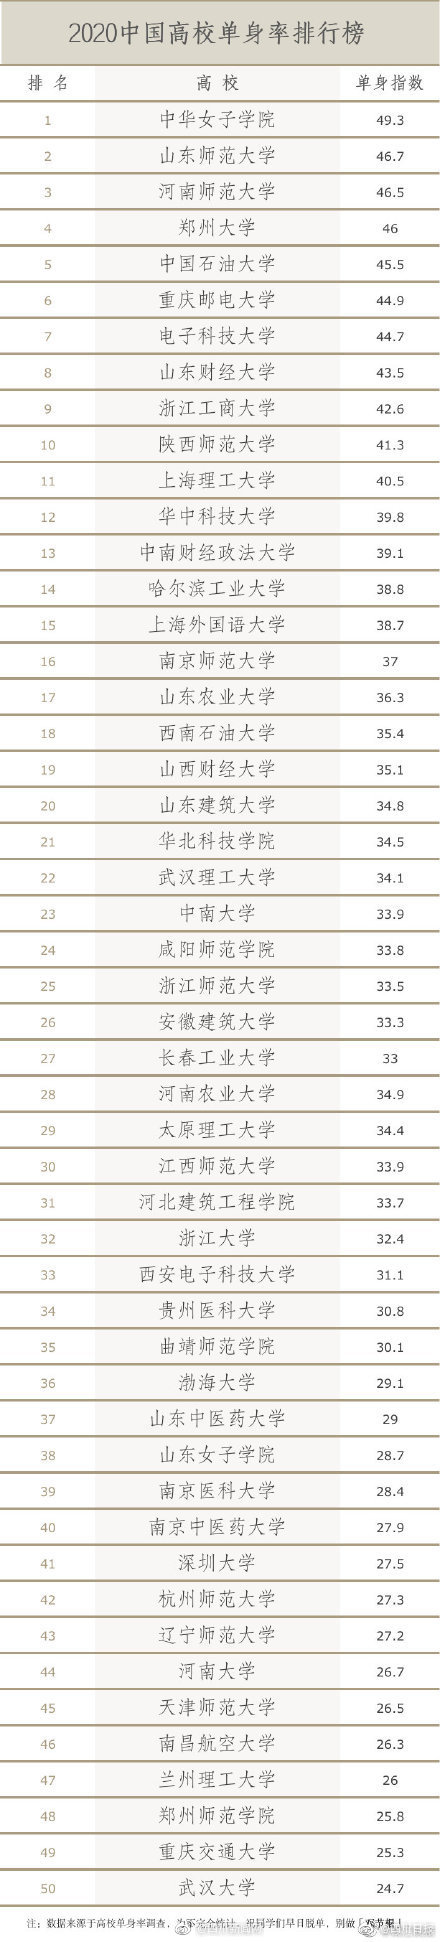 扎心！中国高校单身率排行榜出炉 有你的学校吗？